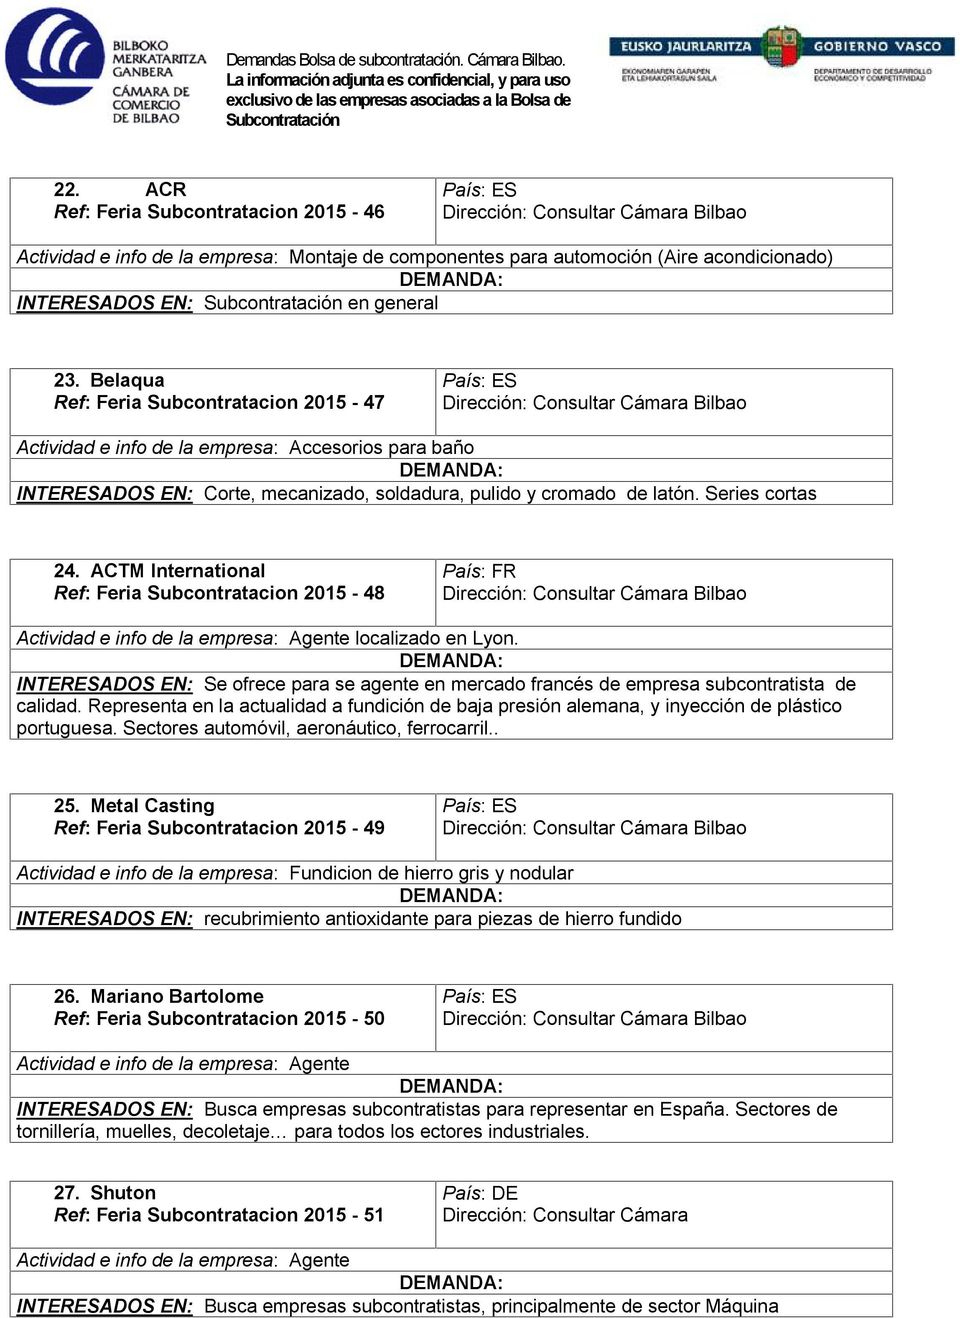 ACTM International Ref: Feria Subcontratacion 2015-48 País: FR Actividad e info de la empresa: Agente localizado en Lyon.